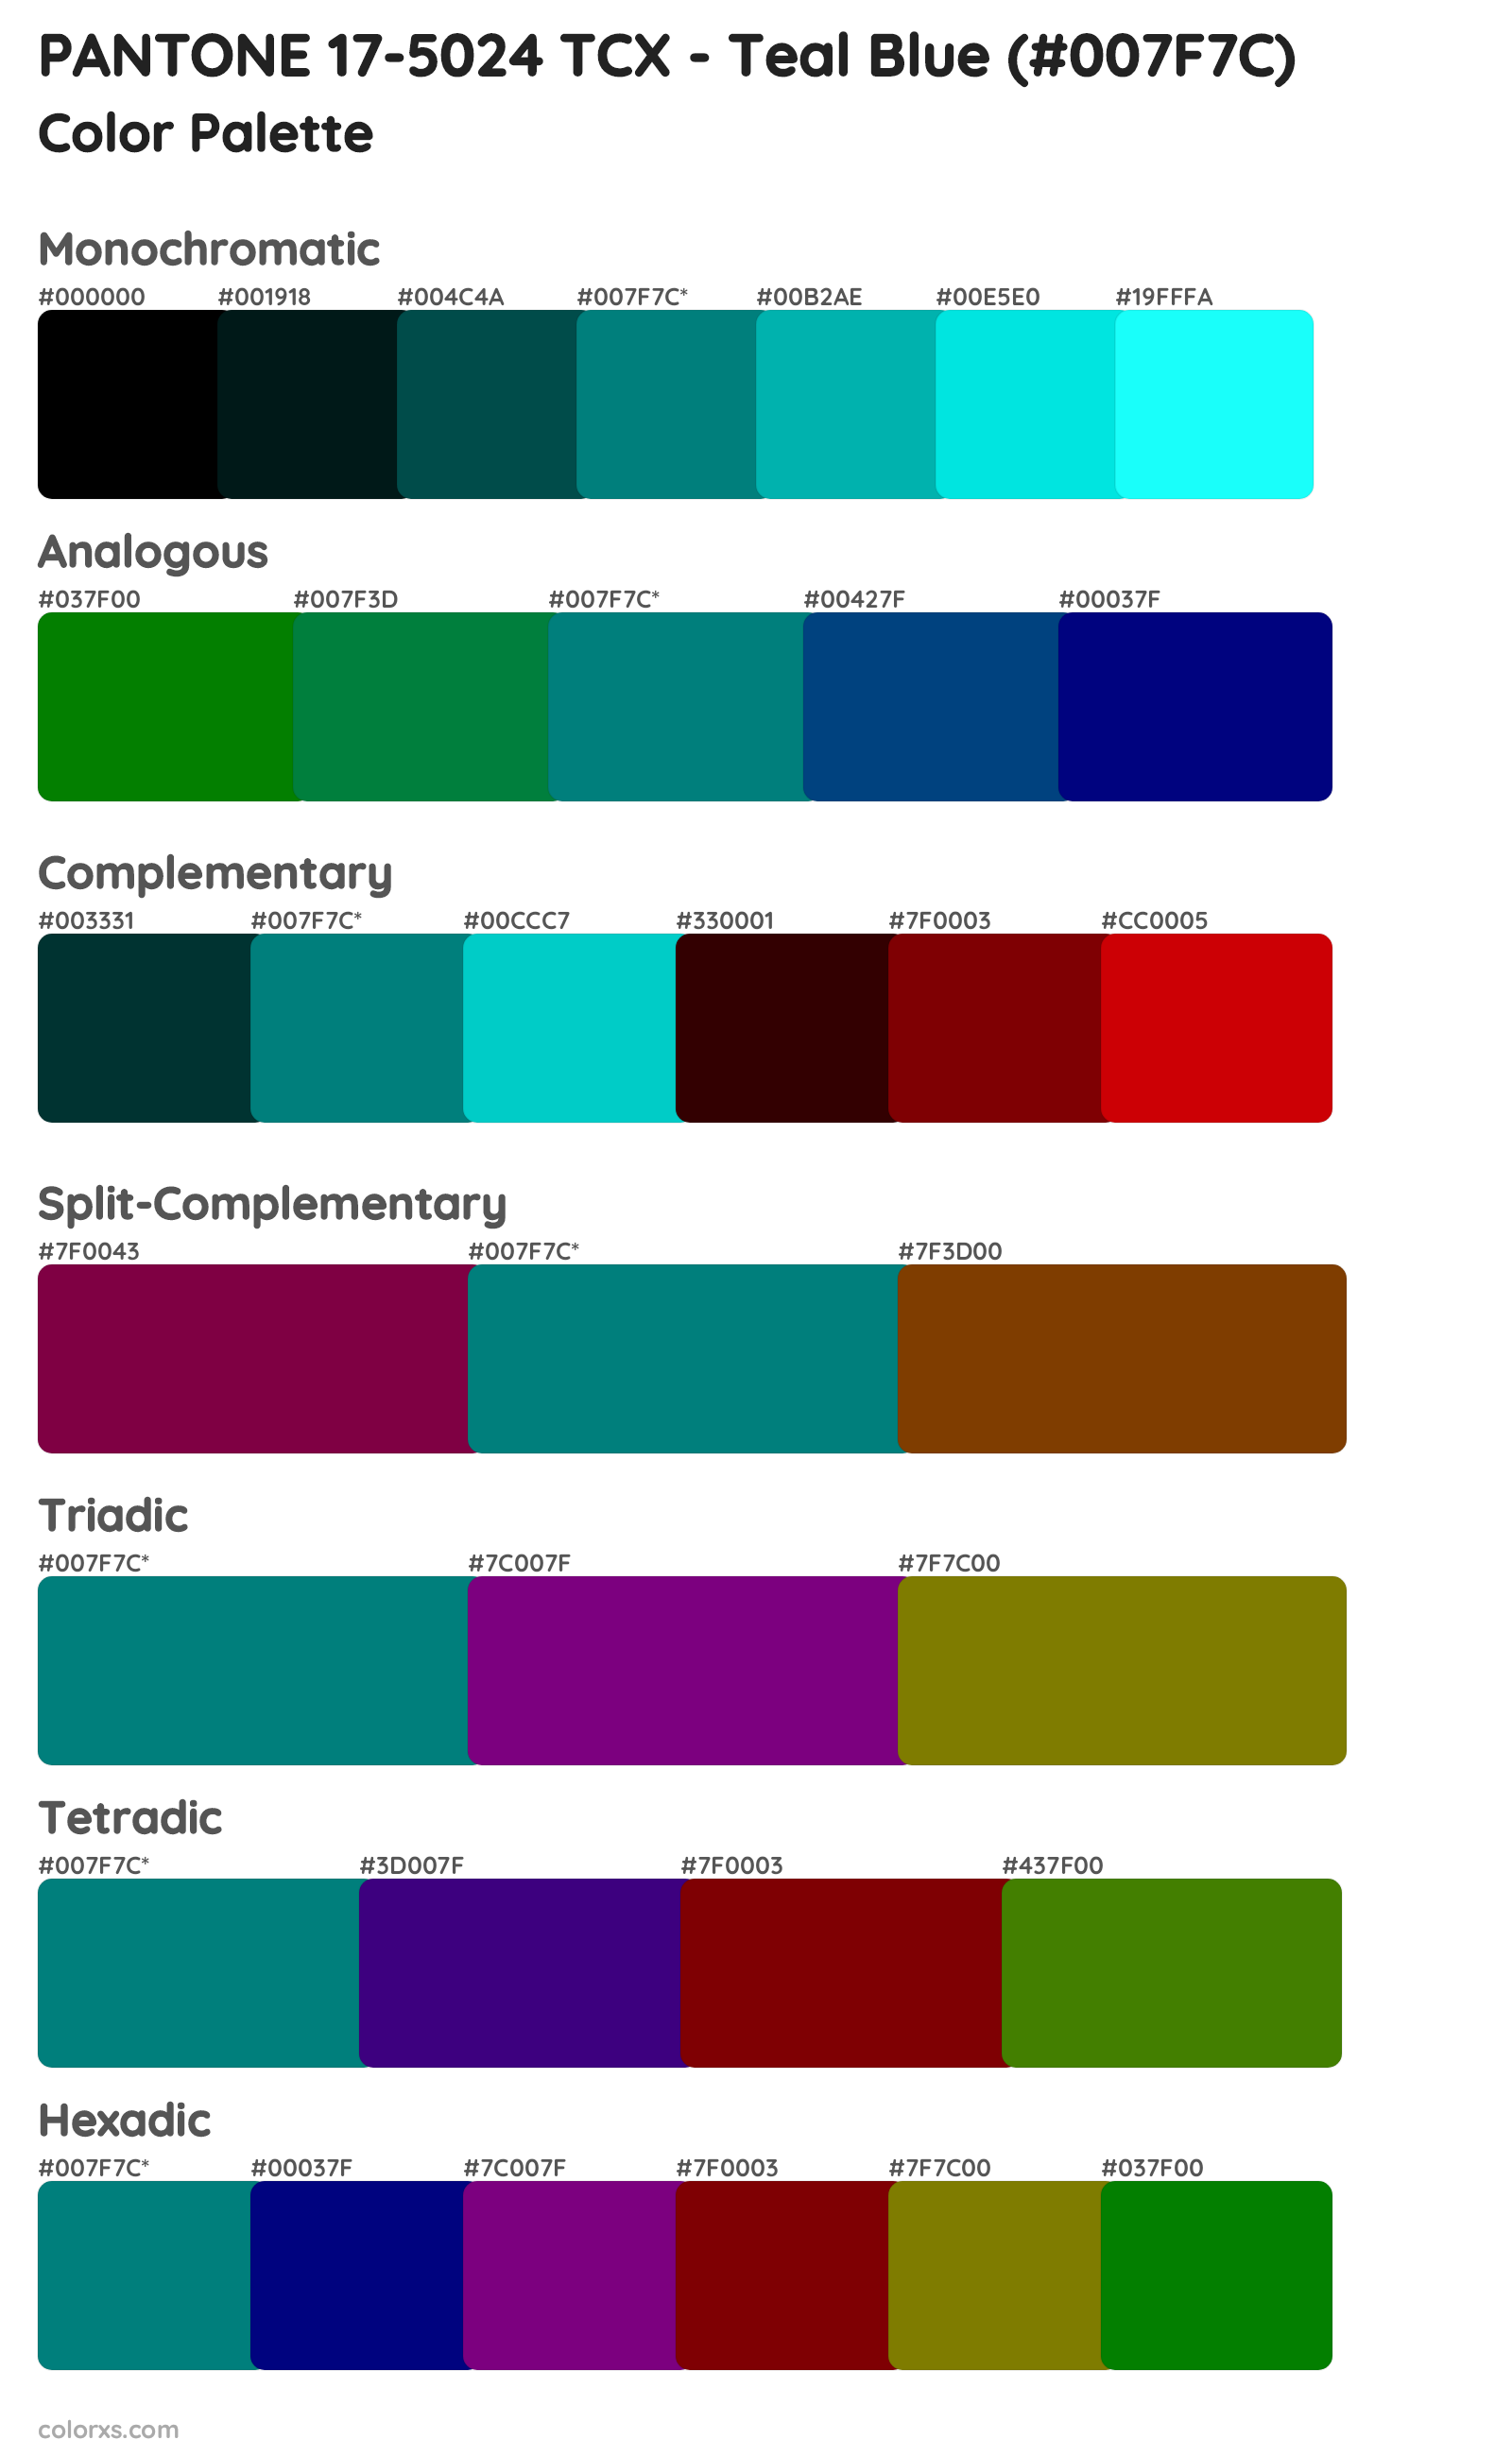 PANTONE 17-5024 TCX - Teal Blue Color Scheme Palettes